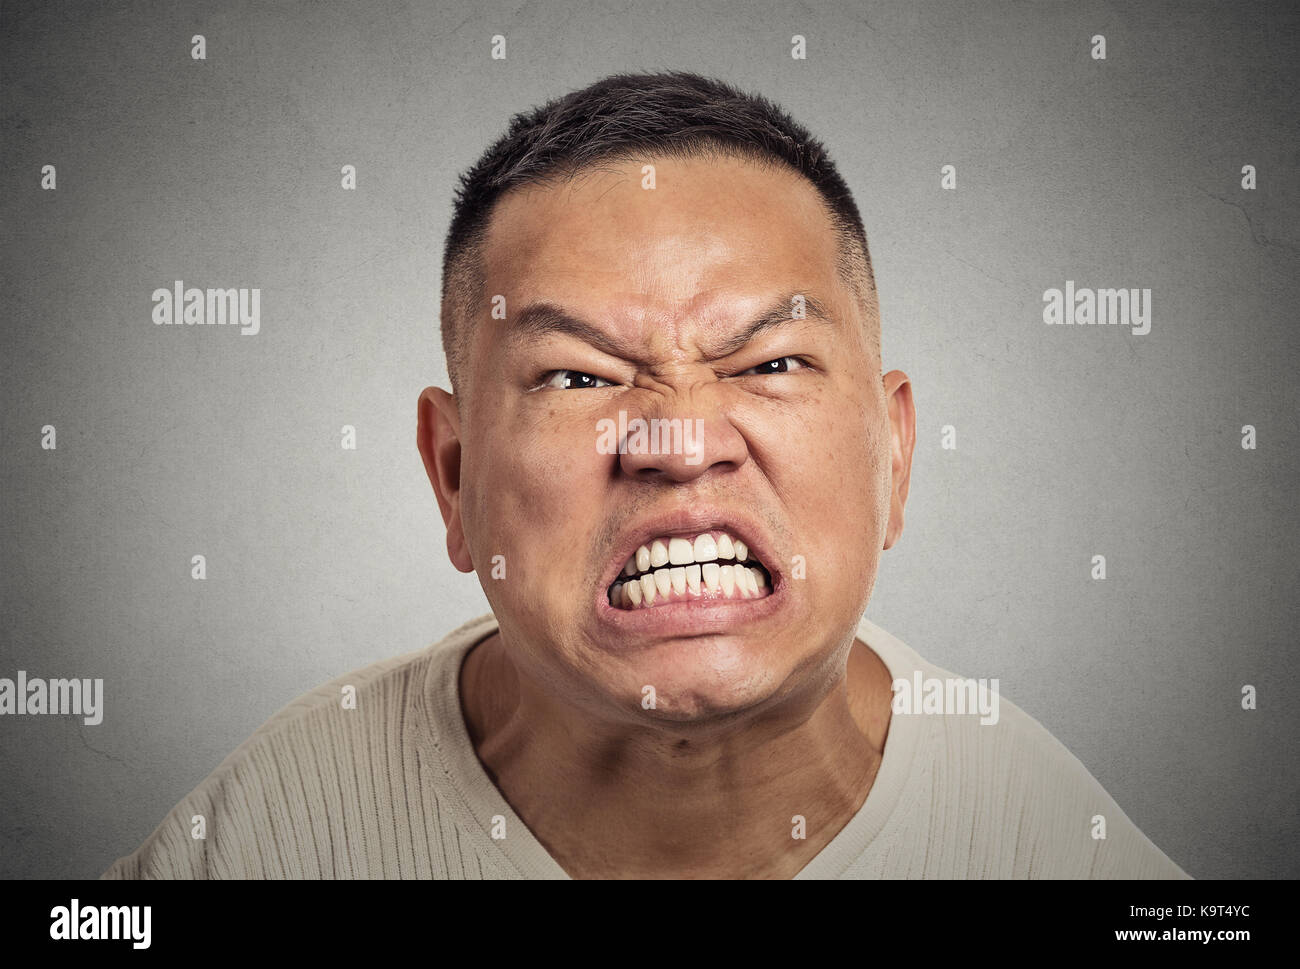 Nahaufnahme Porträt Kopfschuss wütend mittleren Alters Mann mit offenem Mund aggressiv schreien isoliert graue Wand Hintergrund. Negative menschliche Emotion Gesichts expr Stockfoto